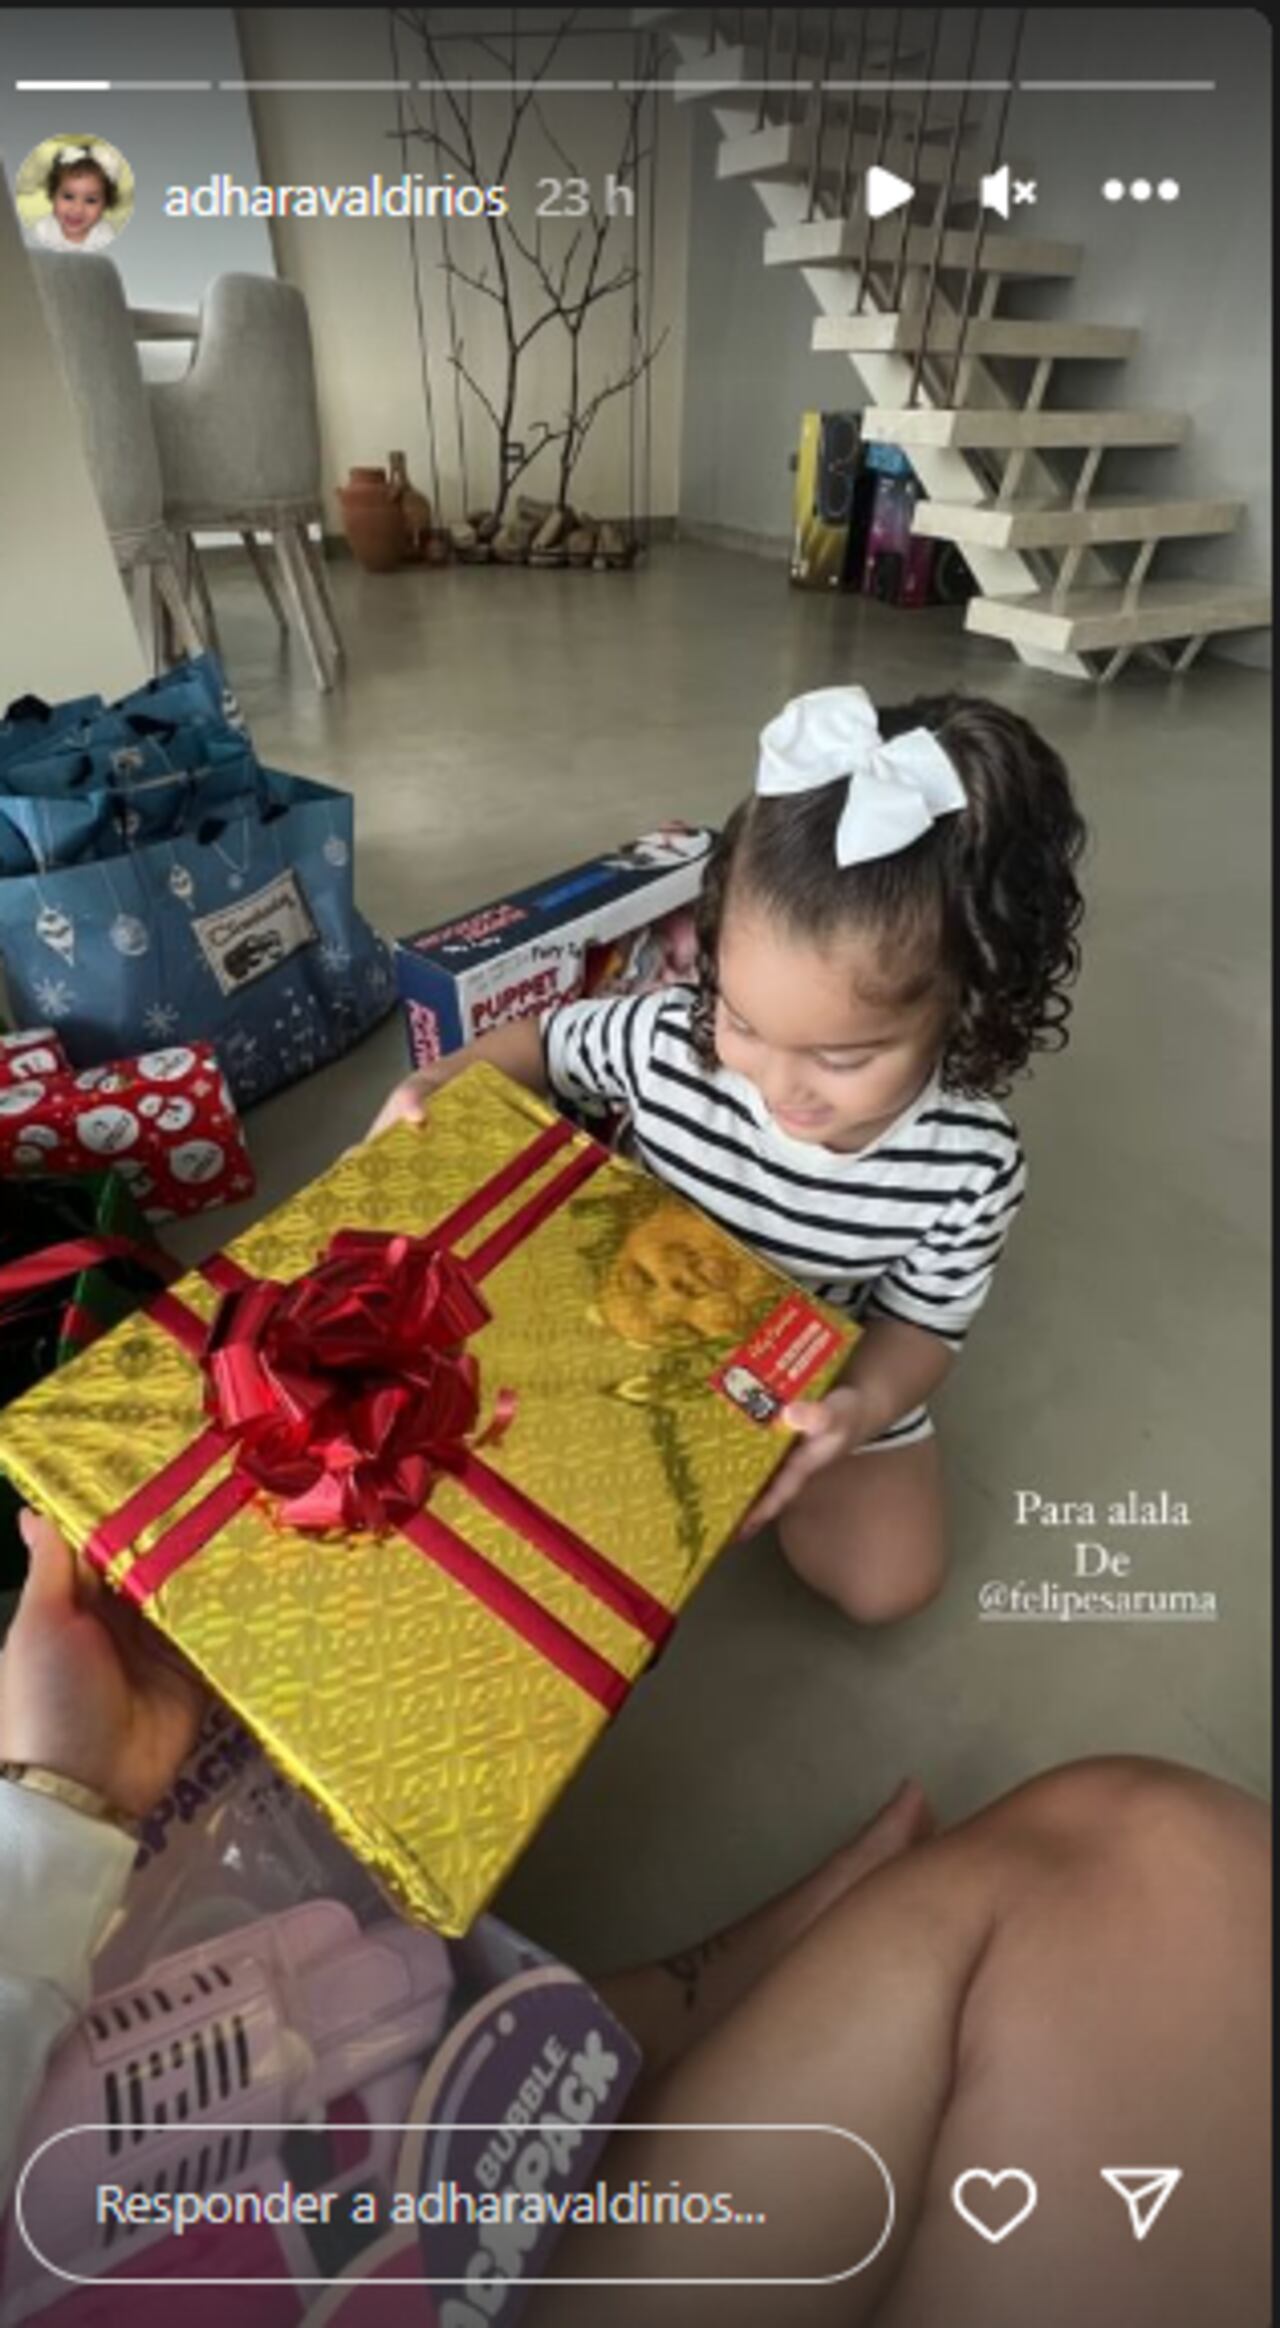 Adhara, hija de Andrea Valdiri, recibió un regalo por parte de su ex Felipe Saruma.